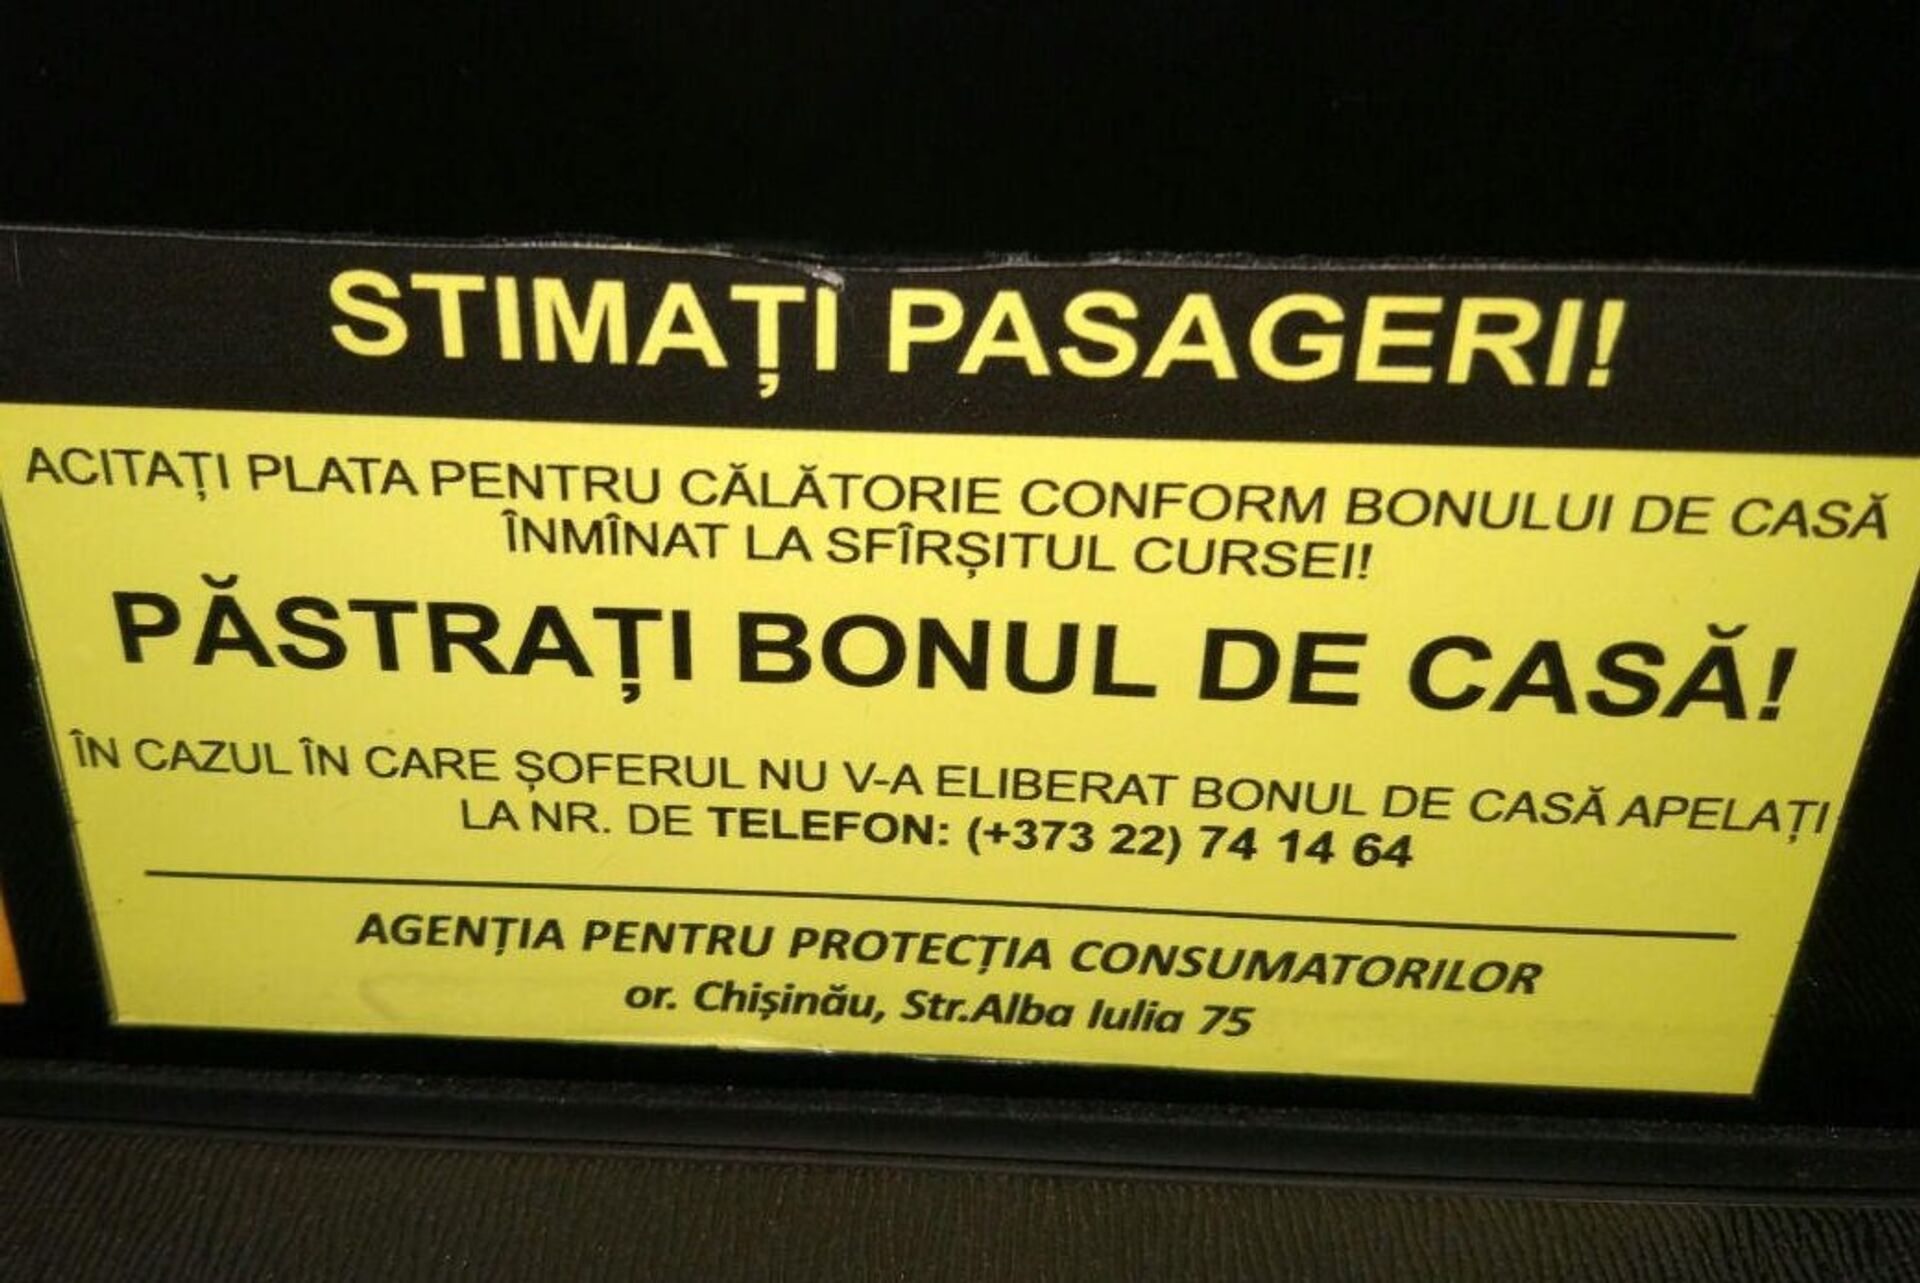 Объявление в такси Уважаемые пассажиры, оплачивайте поездку согласно чеку, который выдается в конце рейса - Sputnik Молдова, 1920, 20.08.2021